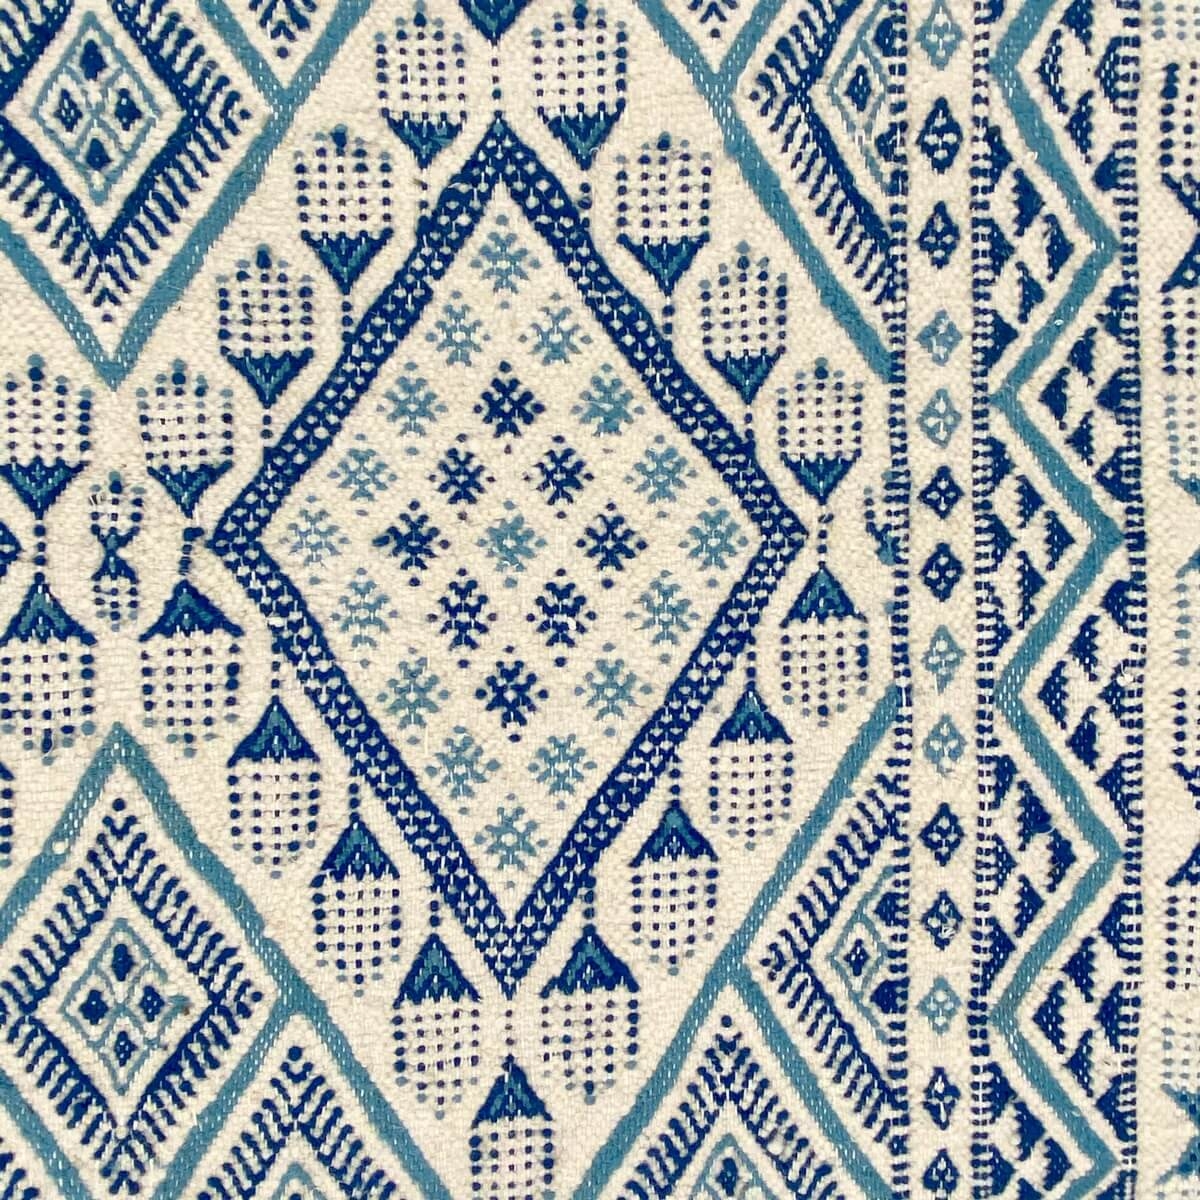 Tapis berbère Tapis Margoum Ghassa 125x195 Bleu/Blanc (Fait main, Laine, Tunisie) Tapis margoum tunisien de la ville de Kairouan